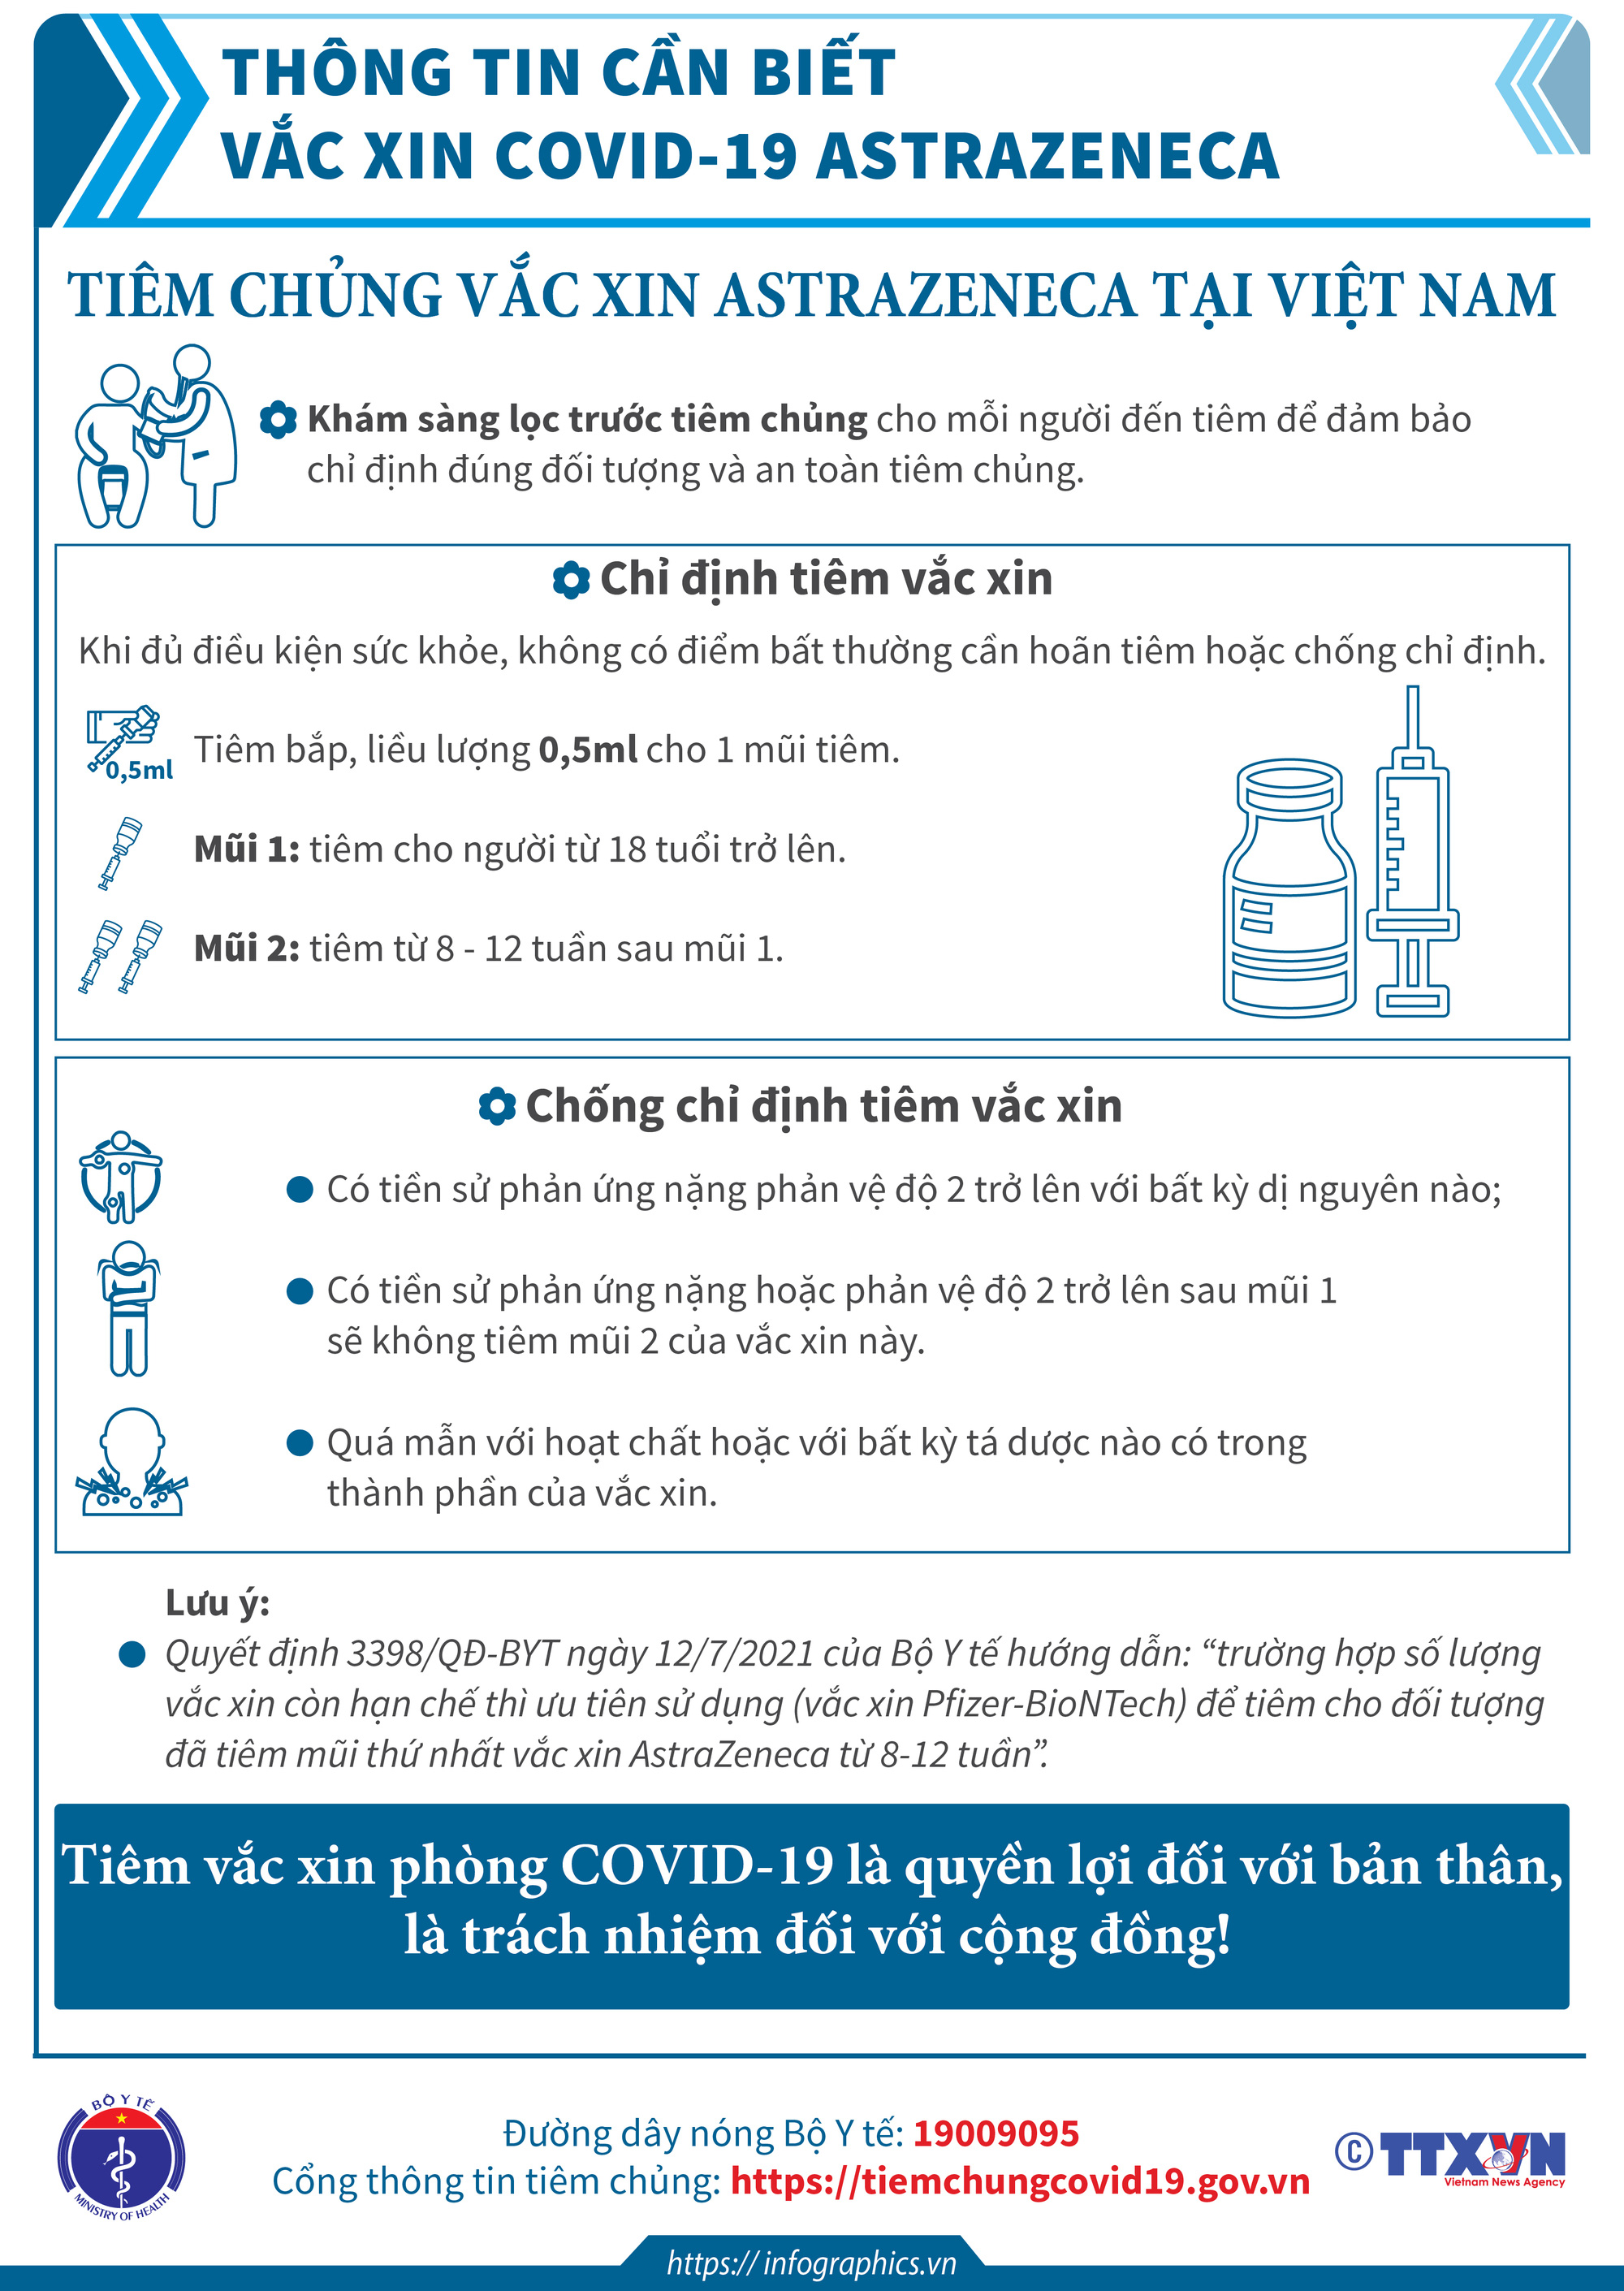 Thông tin cần biết về một số vaccine COVID-19 đang triển khai tiêm chủng tại Việt Nam. - Ảnh 3.